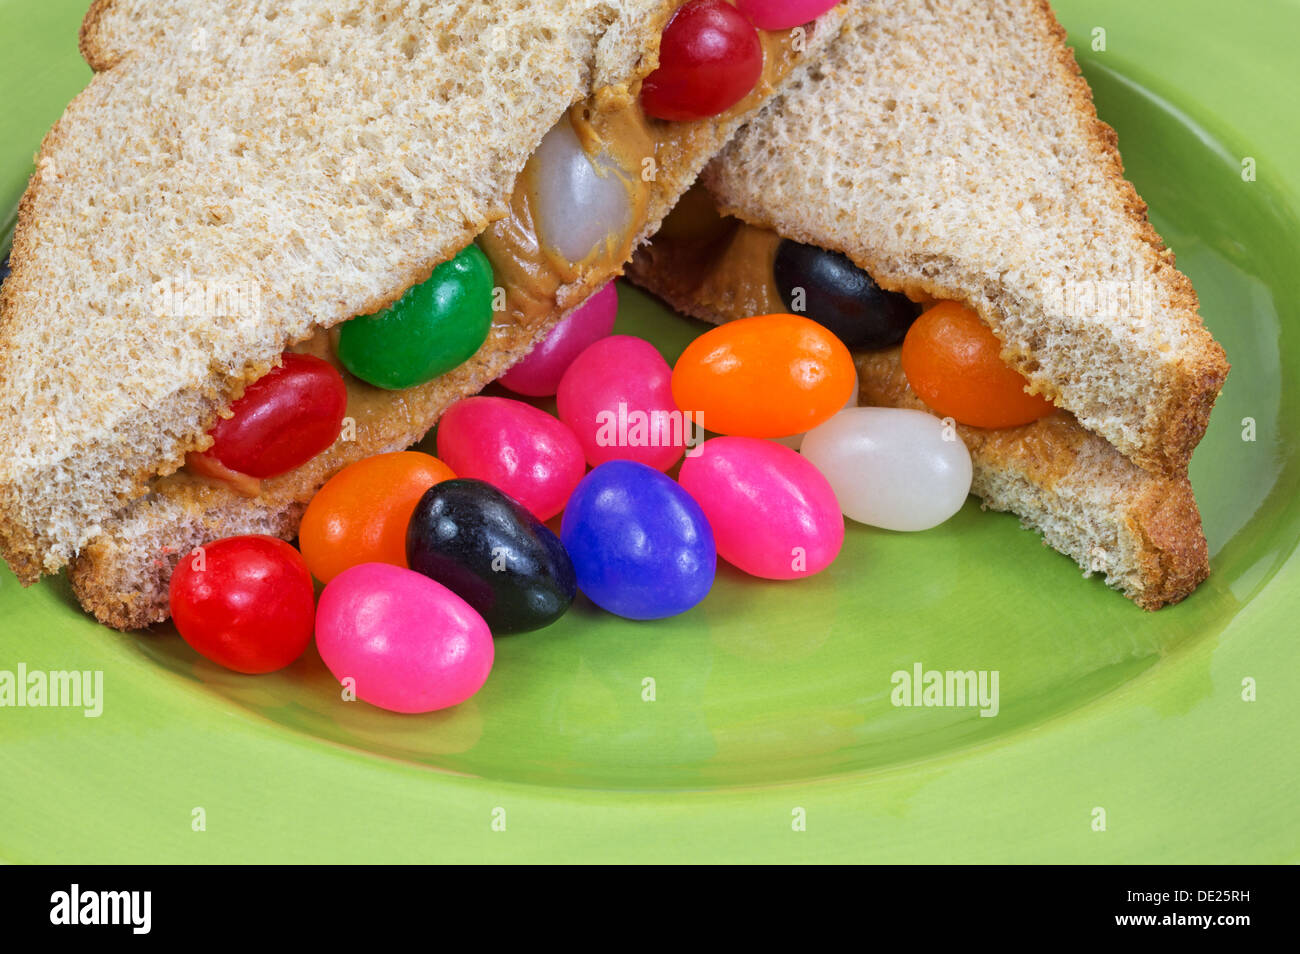 Une vue étroite d'un beurre d'arachide et jelly bean sandwich sur une plaque verte avec des jelly beans. Banque D'Images